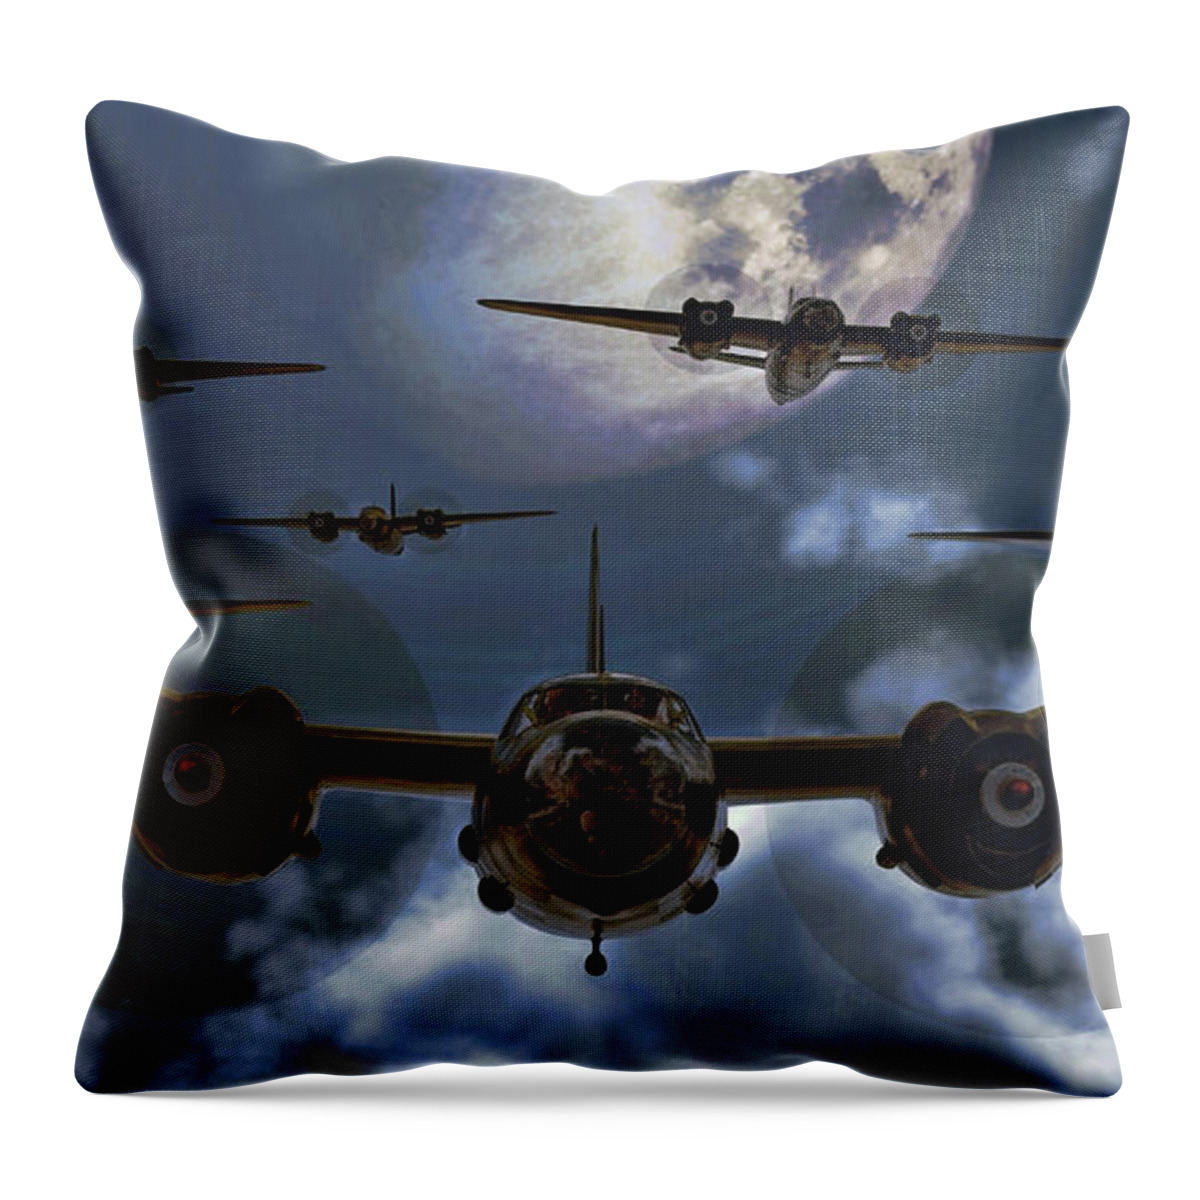 B-26 Throw Pillow featuring the digital art Moonlight Marauders by David Luebbert